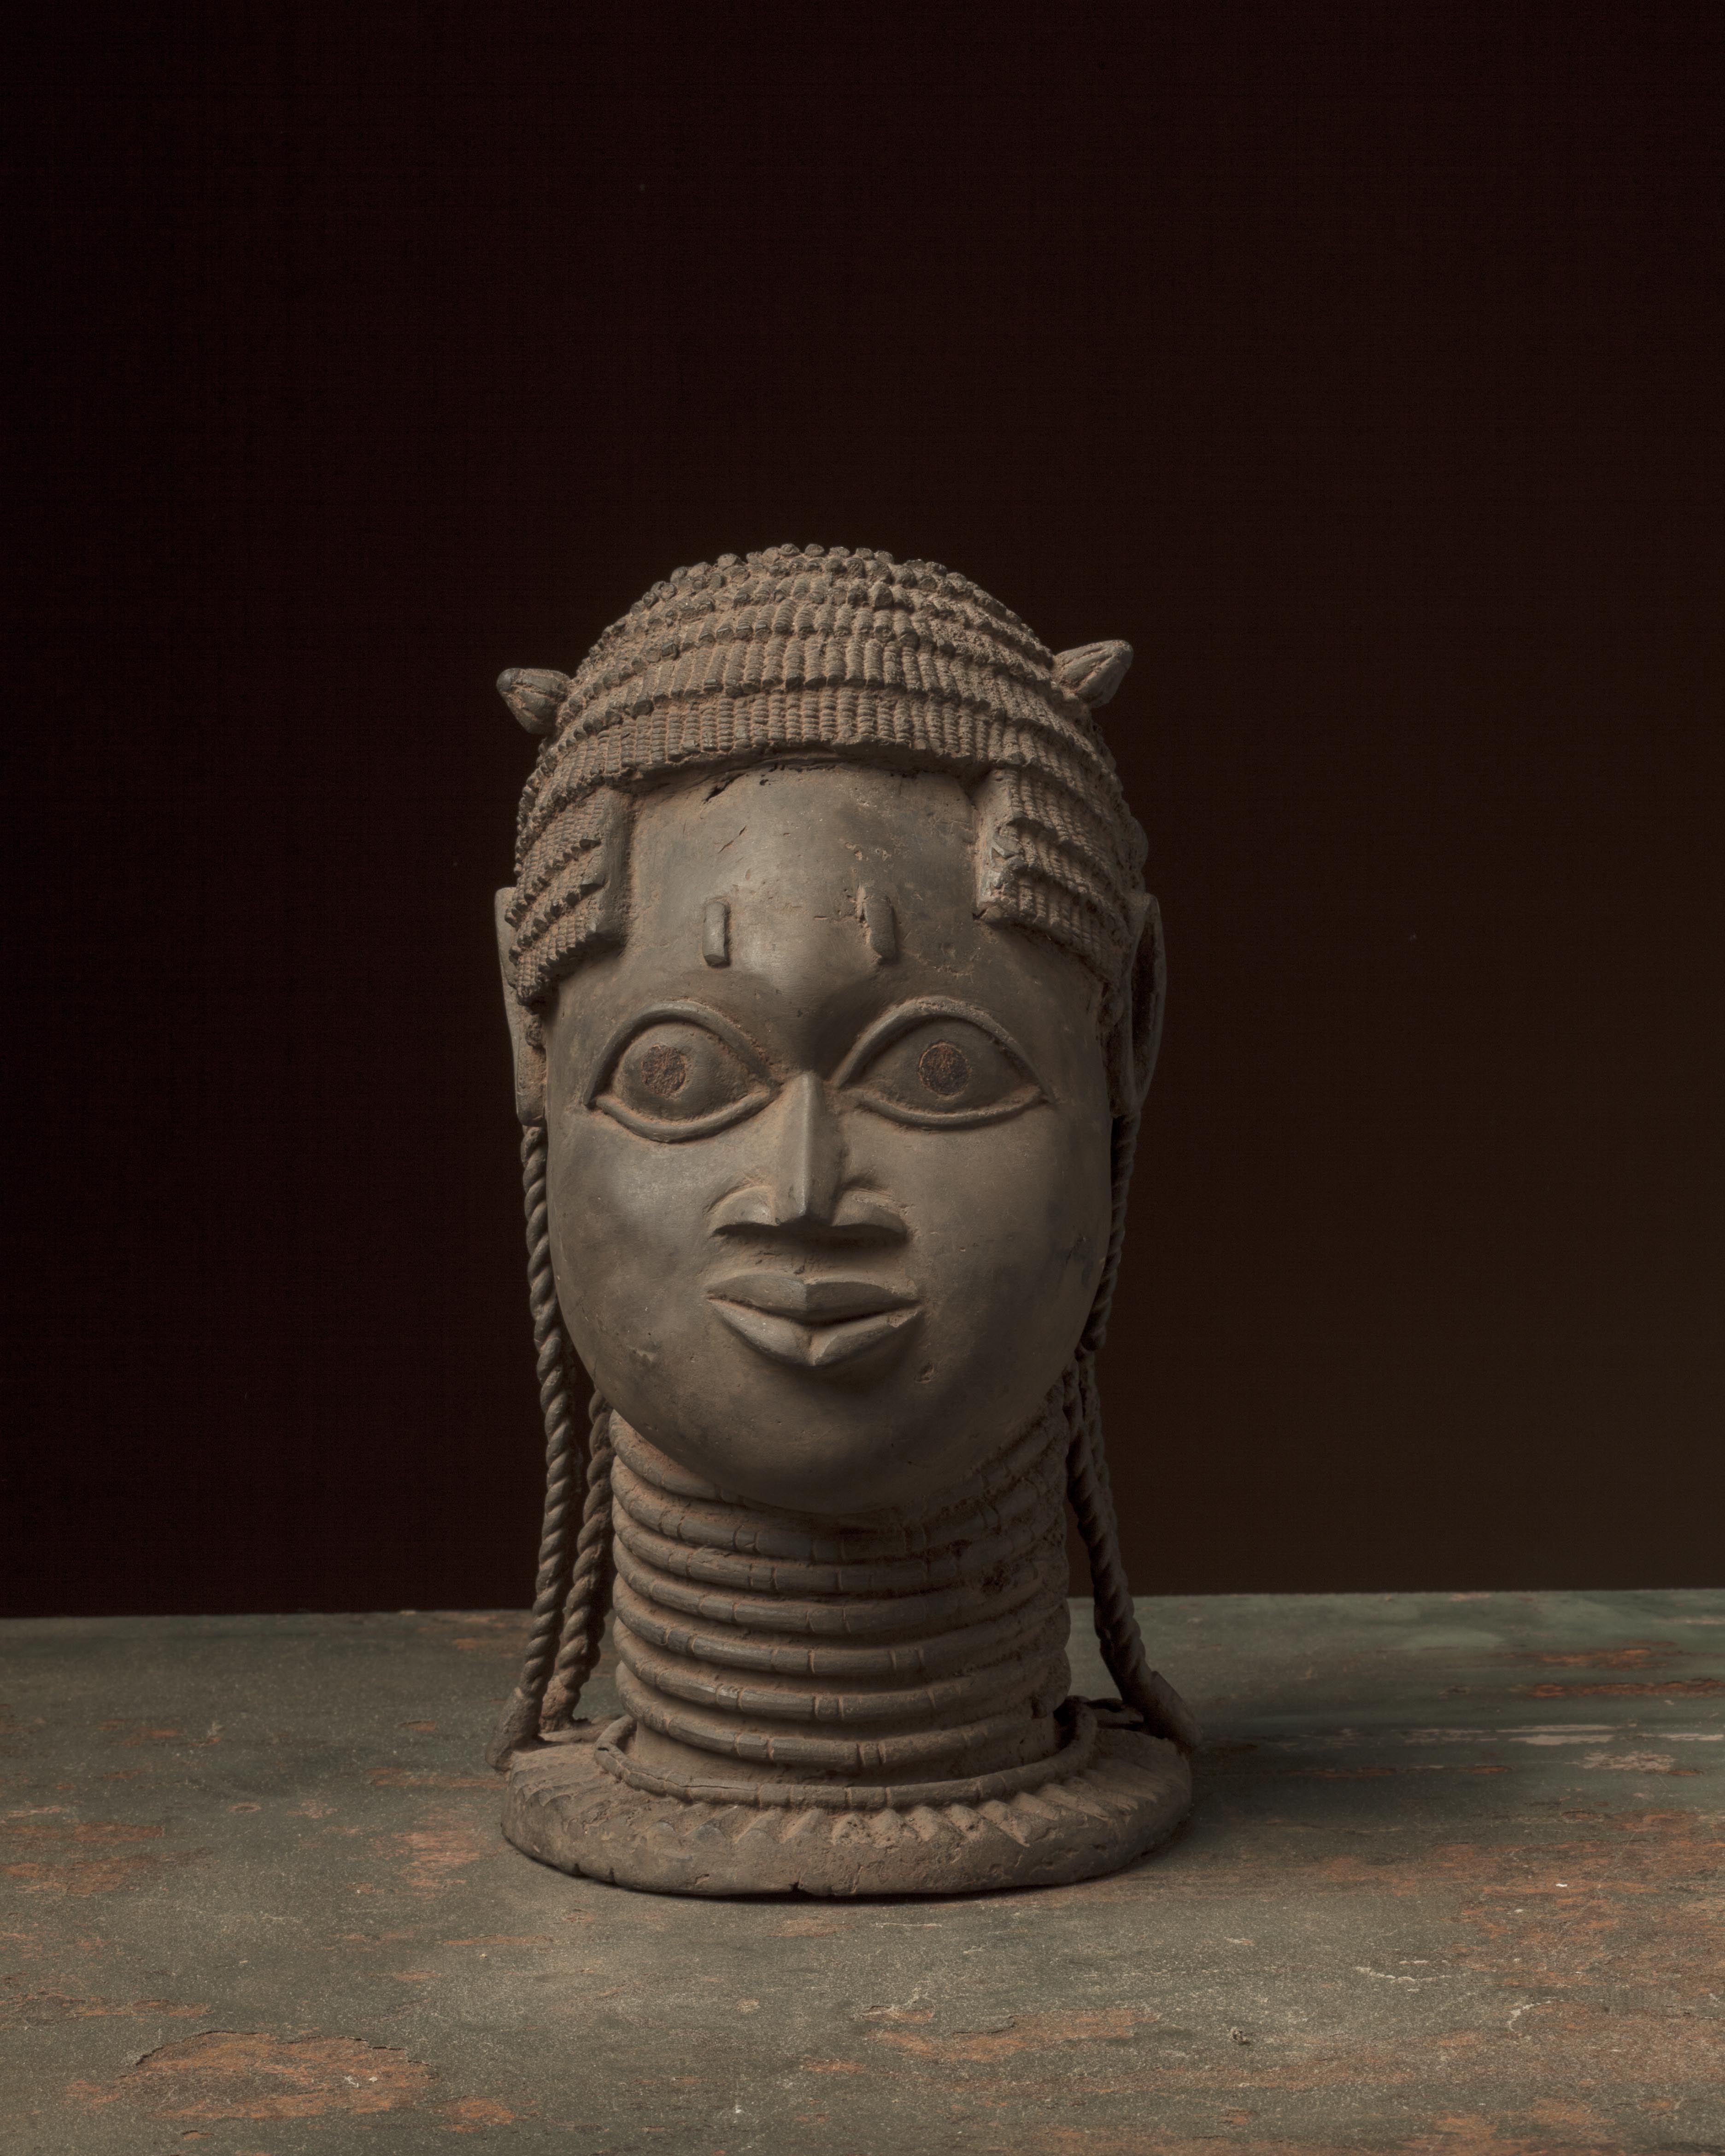  br. Bénin (tête reine), d`afrique : Nigéria, statuette  br. Bénin (tête reine), masque ancien africain  br. Bénin (tête reine), art du Nigéria - Art Africain, collection privées Belgique. Statue africaine de la tribu des  br. Bénin (tête reine), provenant du Nigéria, 1720 Tête commémorative de la reine mère.Elle porte un collier de 8 rang.Sur sa tête il y a de chaque côté une perle insigne de sa dignité 17eme sc.anc.Sylla Lamceini)

Herdenkings hoofd van een konigs moeder .Ze draagt een 8 rijen halssnoer.Langs beide zeiden op haar hoofd heeft ze een parel die haarwaardigheid aanduid.17de eeuw (oud.col.Sylla Lamceini.)

. art,culture,masque,statue,statuette,pot,ivoire,exposition,expo,masque original,masques,statues,statuettes,pots,expositions,expo,masques originaux,collectionneur d`art,art africain,culture africaine,masque africain,statue africaine,statuette africaine,pot africain,ivoire africain,exposition africain,expo africain,masque origina africainl,masques africains,statues africaines,statuettes africaines,pots africains,expositions africaines,expo africaines,masques originaux  africains,collectionneur d`art africain